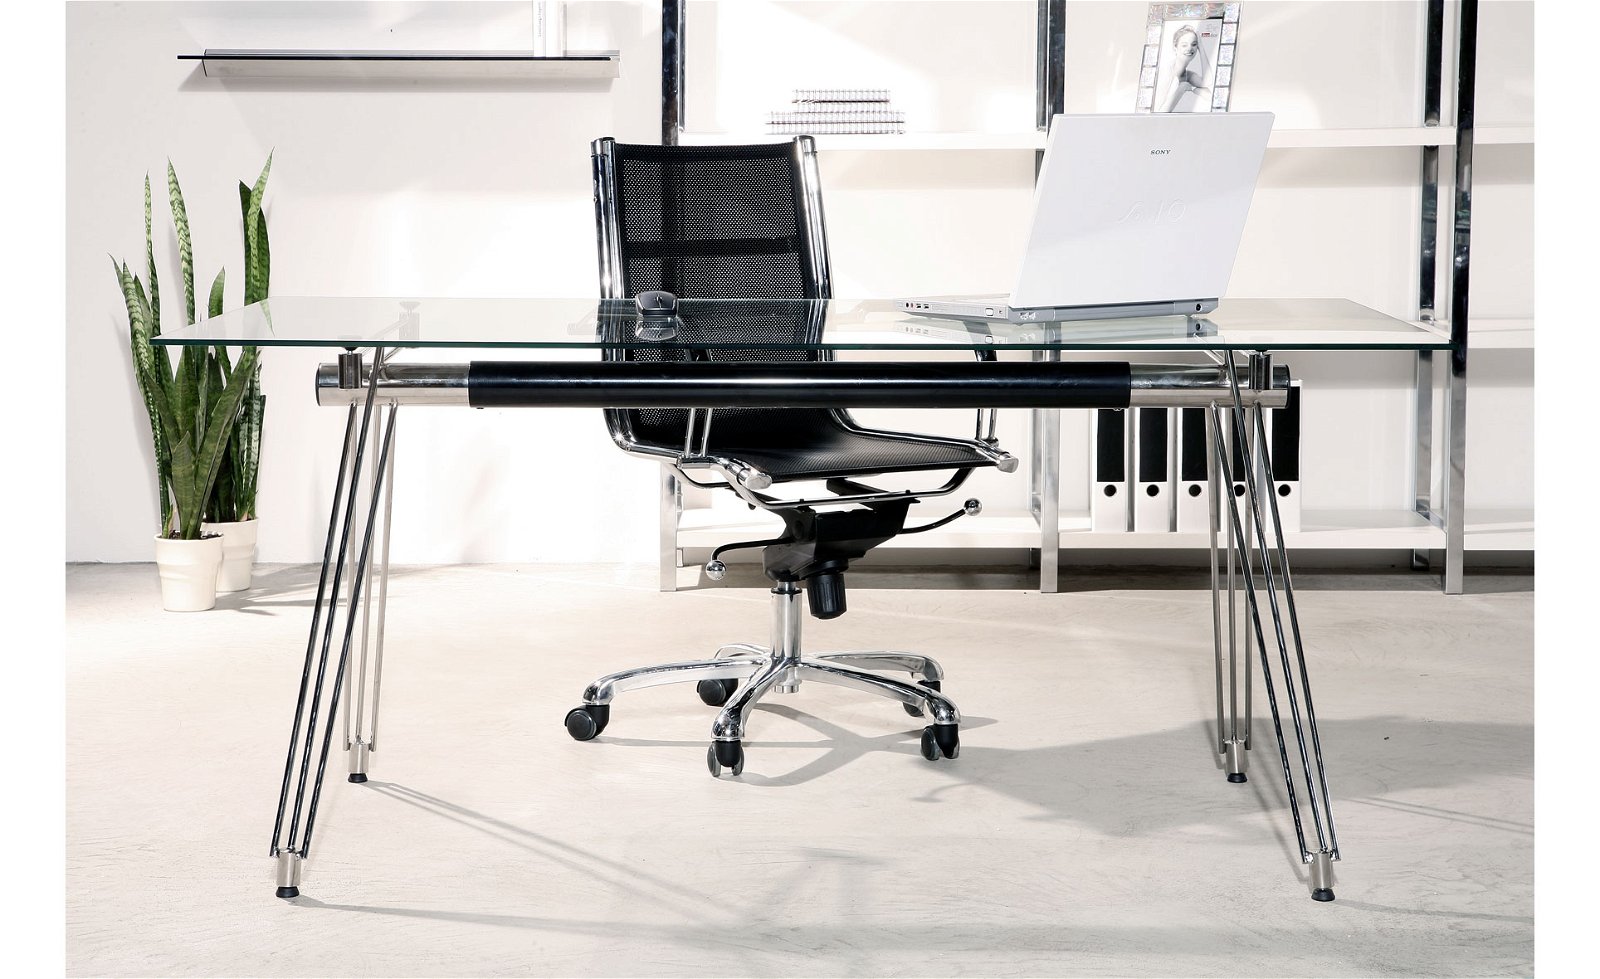 Mesa de despacho cromada Moderna Dove Design